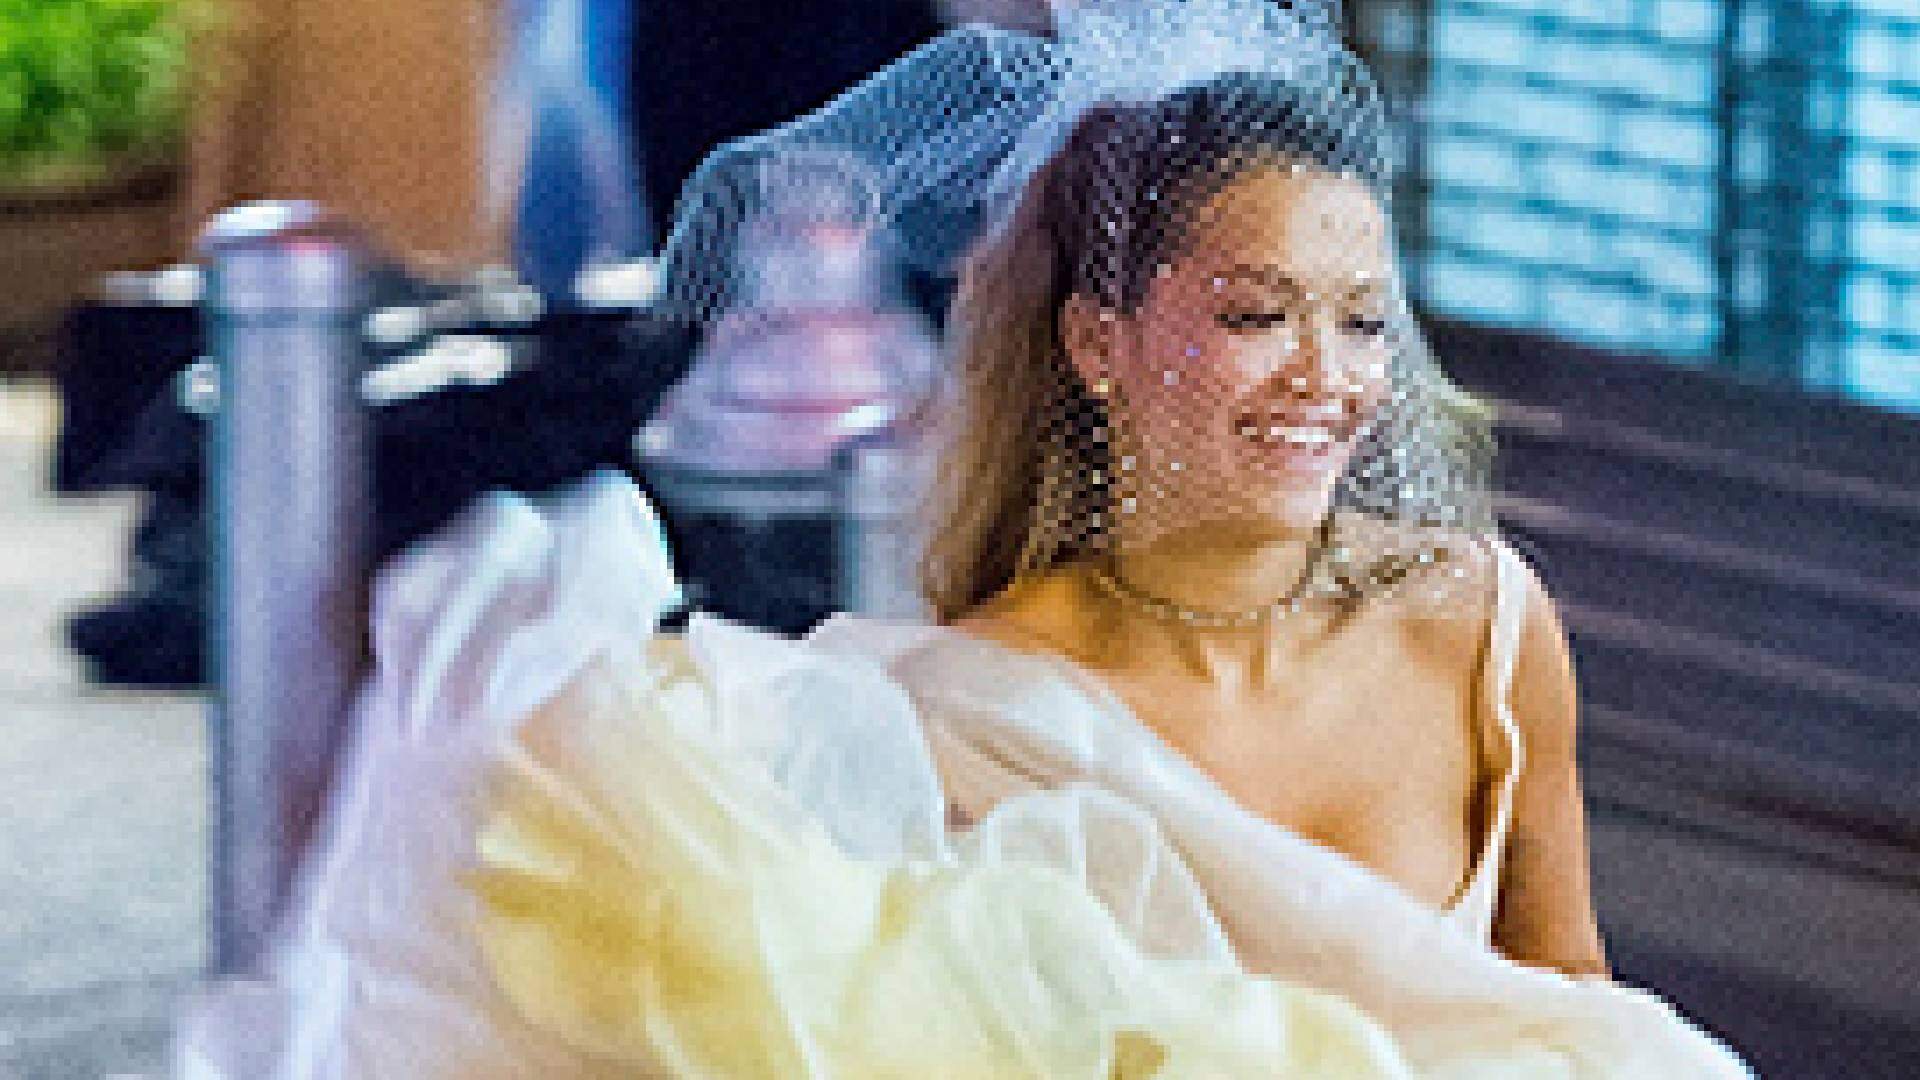 Casamento à vista? Rita Ora fica noiva de famoso diretor de cinema - Metropolitana FM